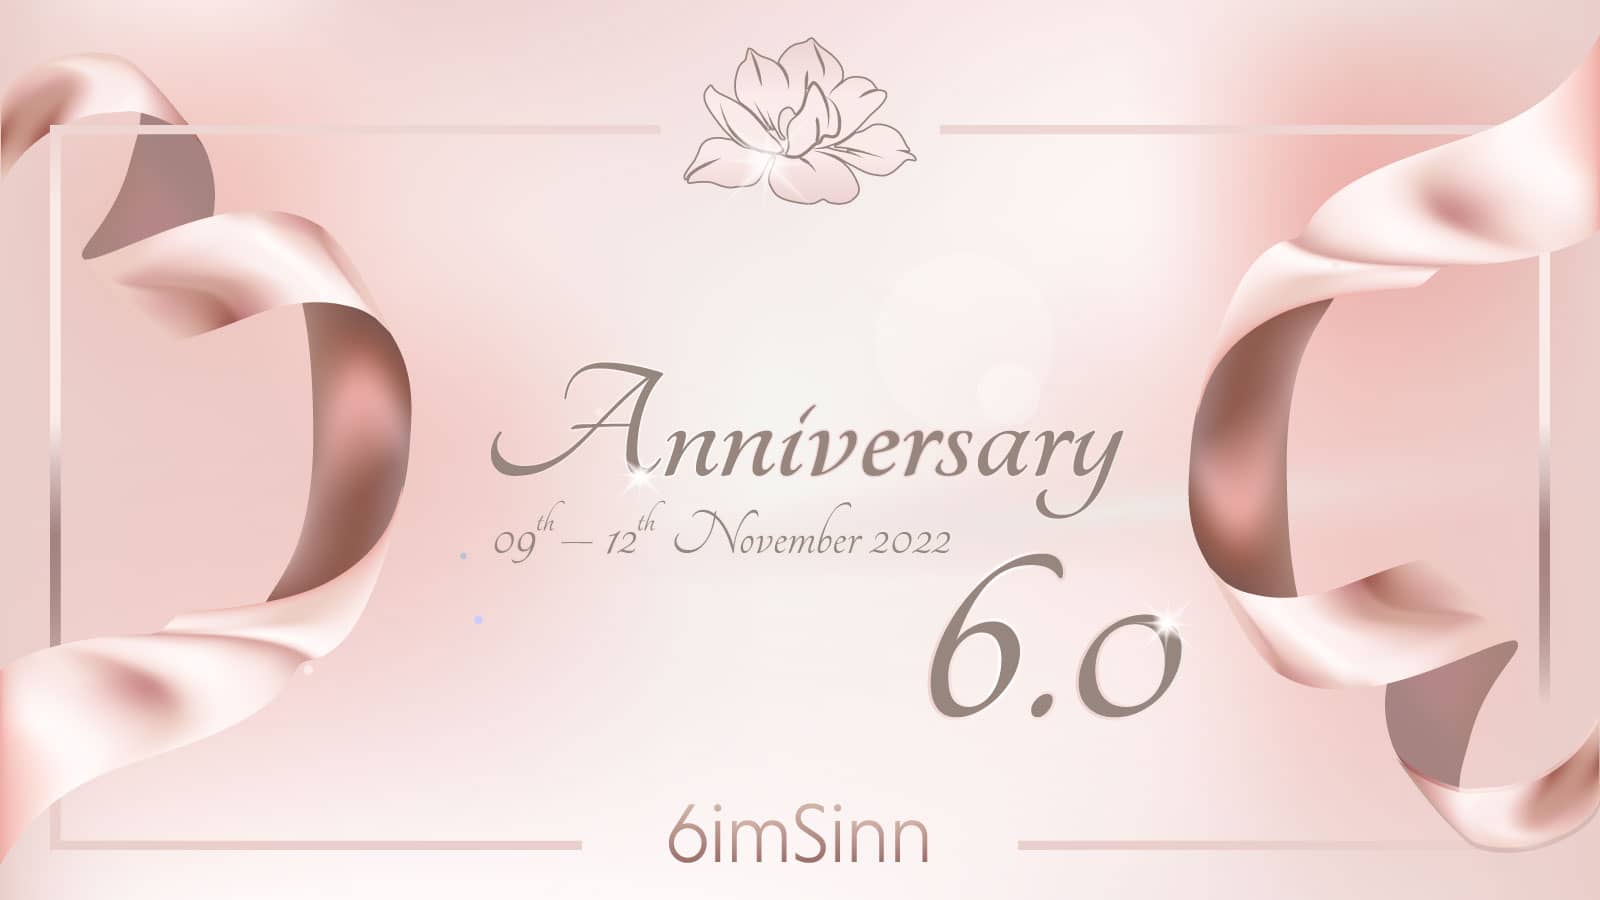 6imSinn_Anniversary:Jubiläum_6Jahre_2022